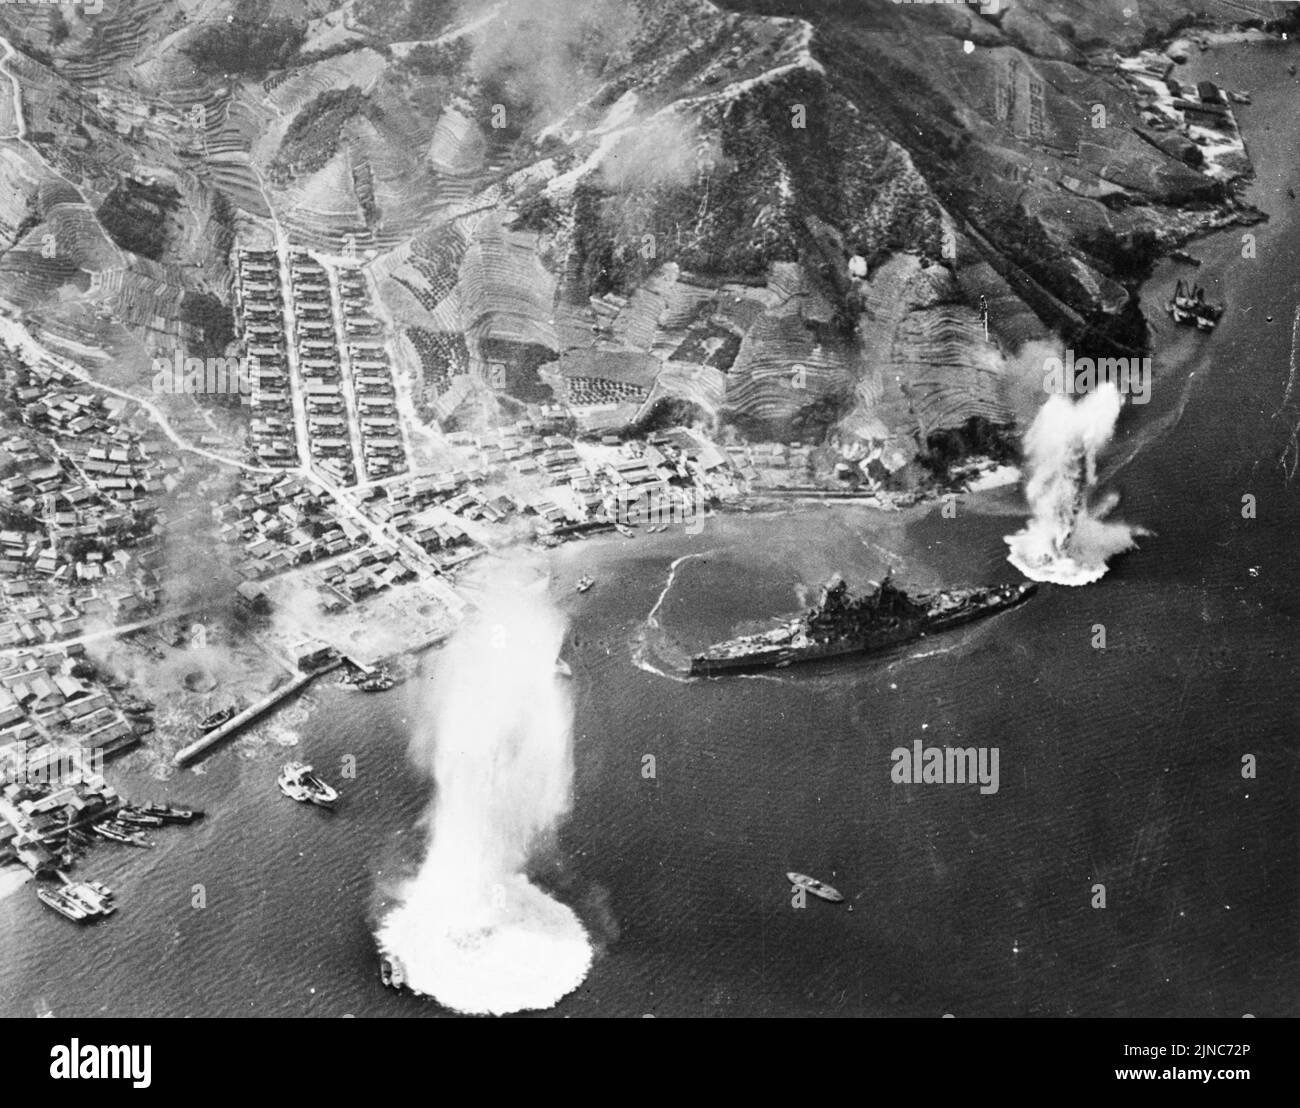 Haruna, cuirassé de la Marine impériale japonaise, à ses amarres près de Kure, au Japon, sous l'attaque d'avions de transport de la Marine américaine, le 28 juillet 1945. Le navire a été frappé et détruit à ses rmoiings pendant cette attaque. Banque D'Images